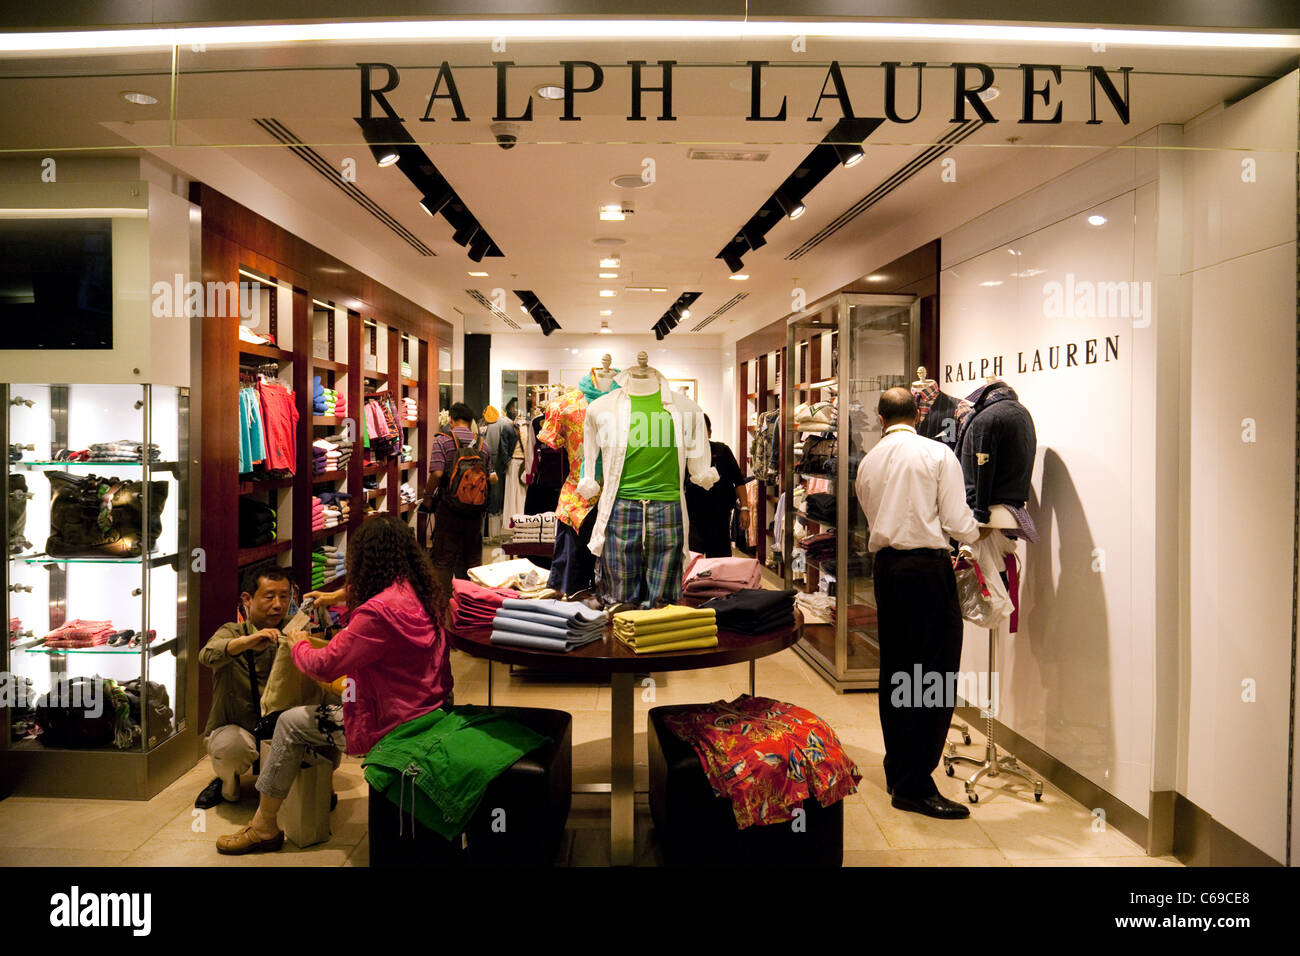 ralph lauren shop